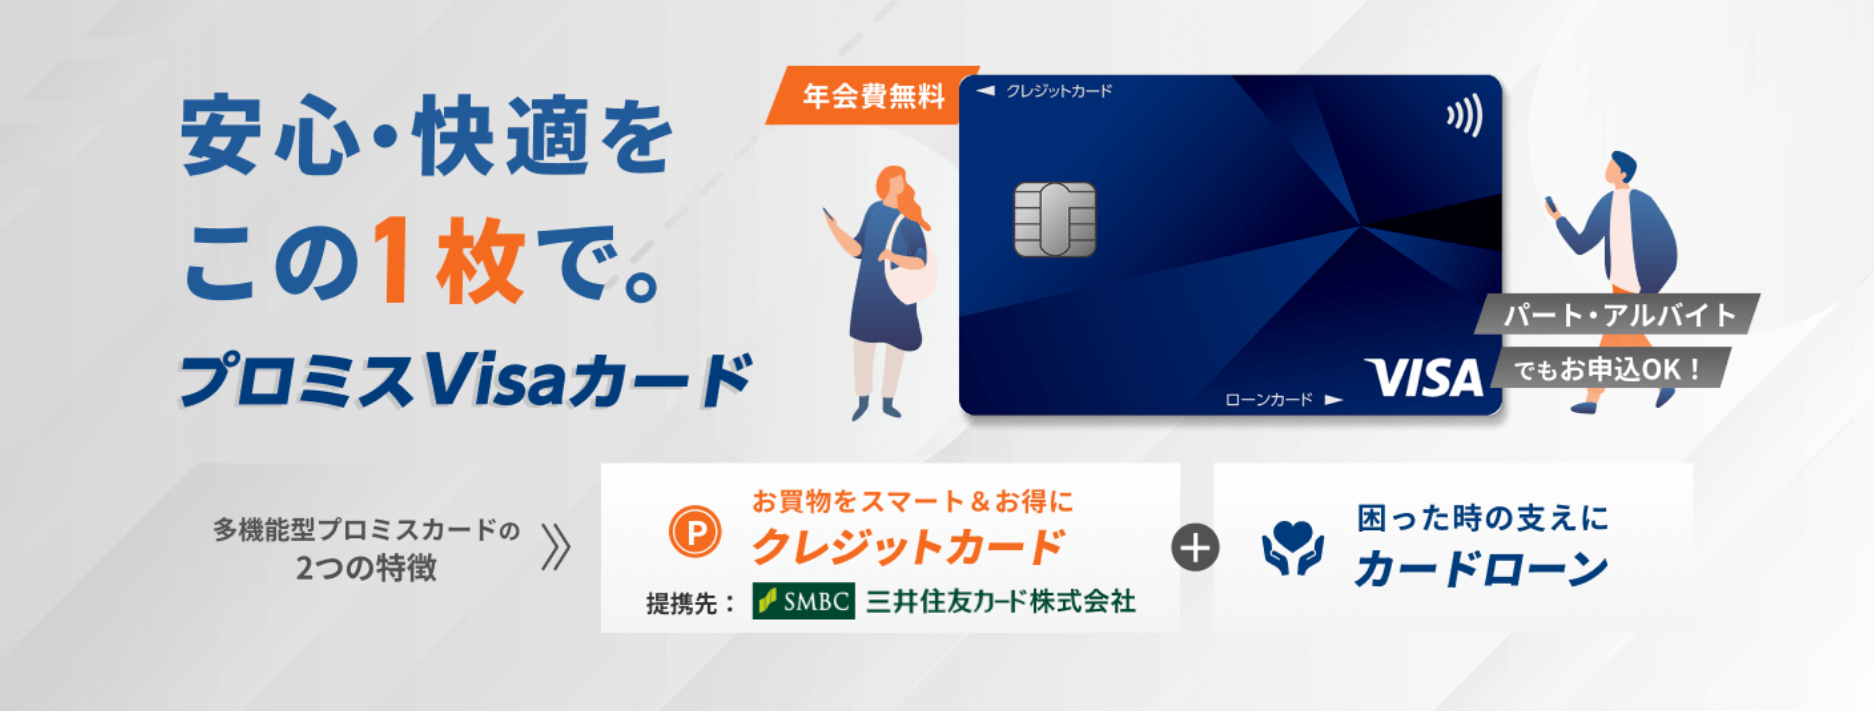 クレジットカード審査_プロミスVISAカード